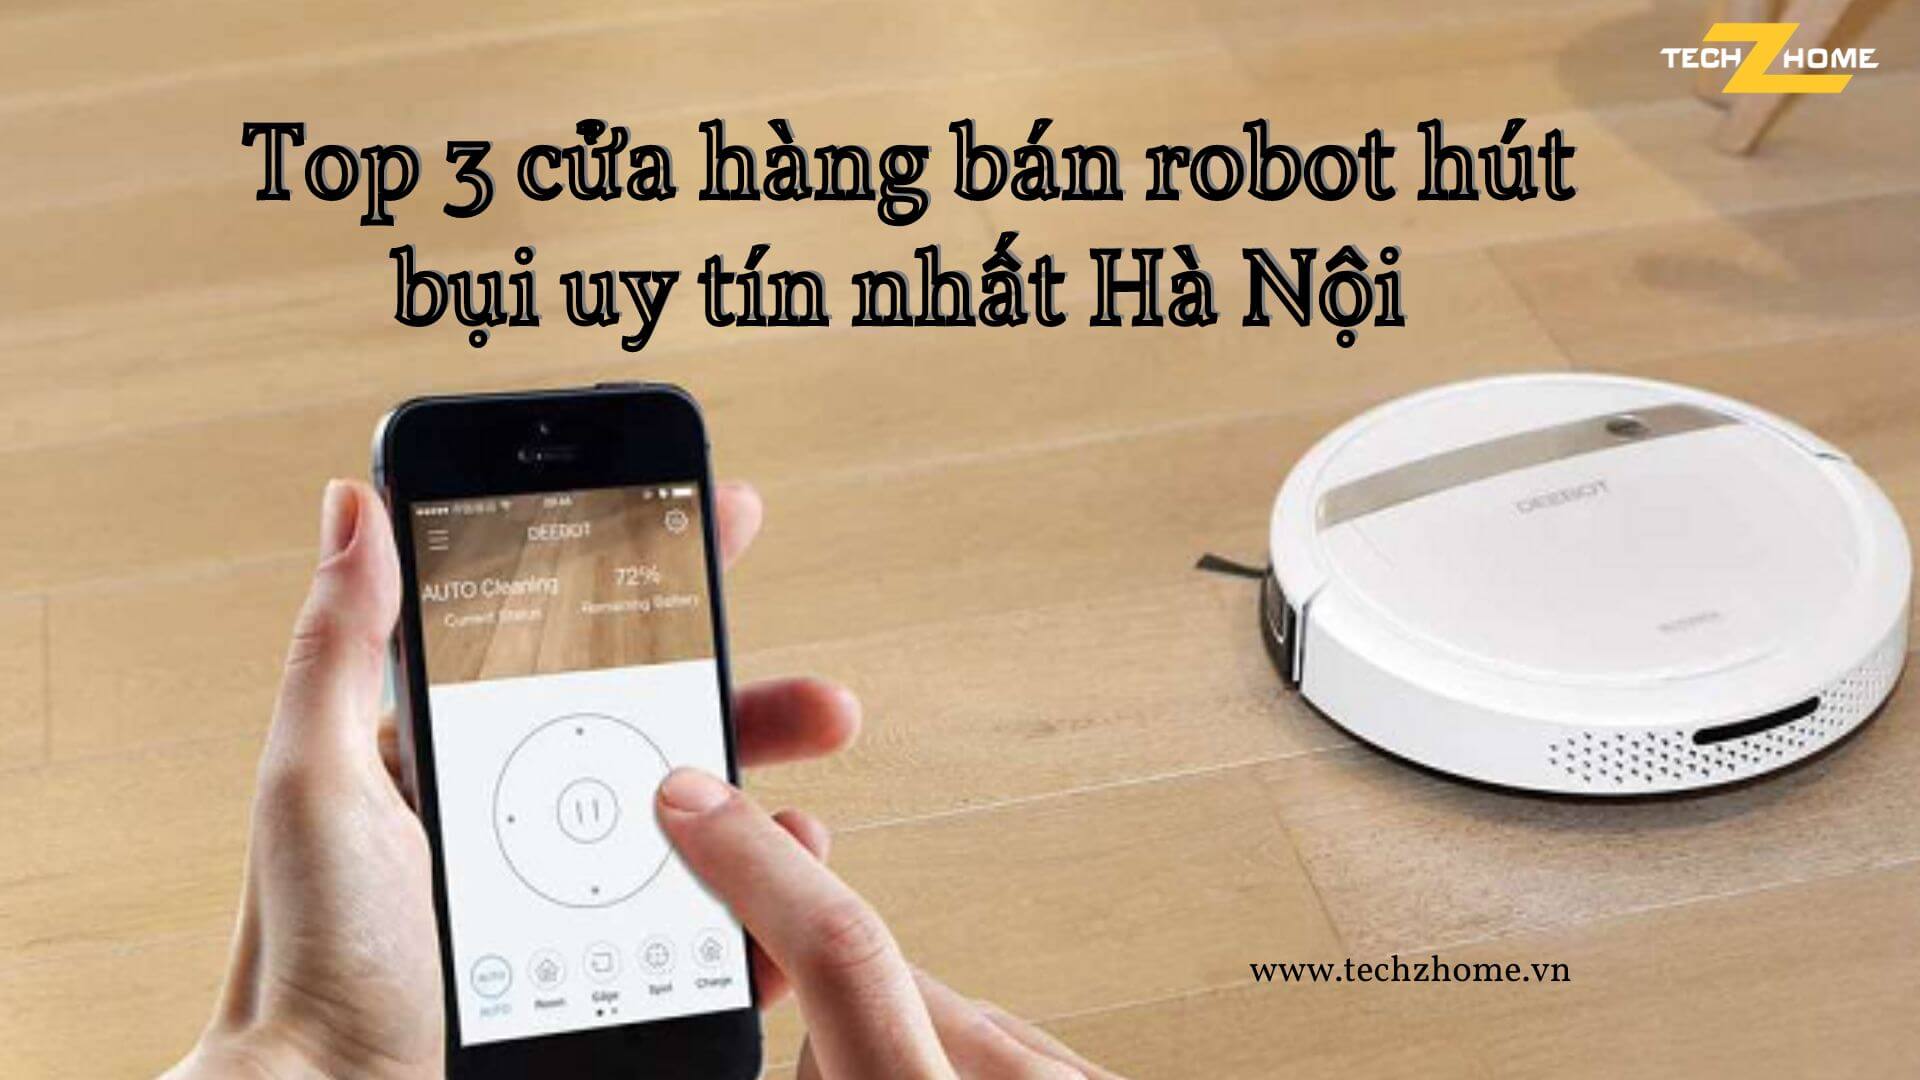 Top 3 cửa hàng bán robot hút bụi uy tín nhất Hà Nội 